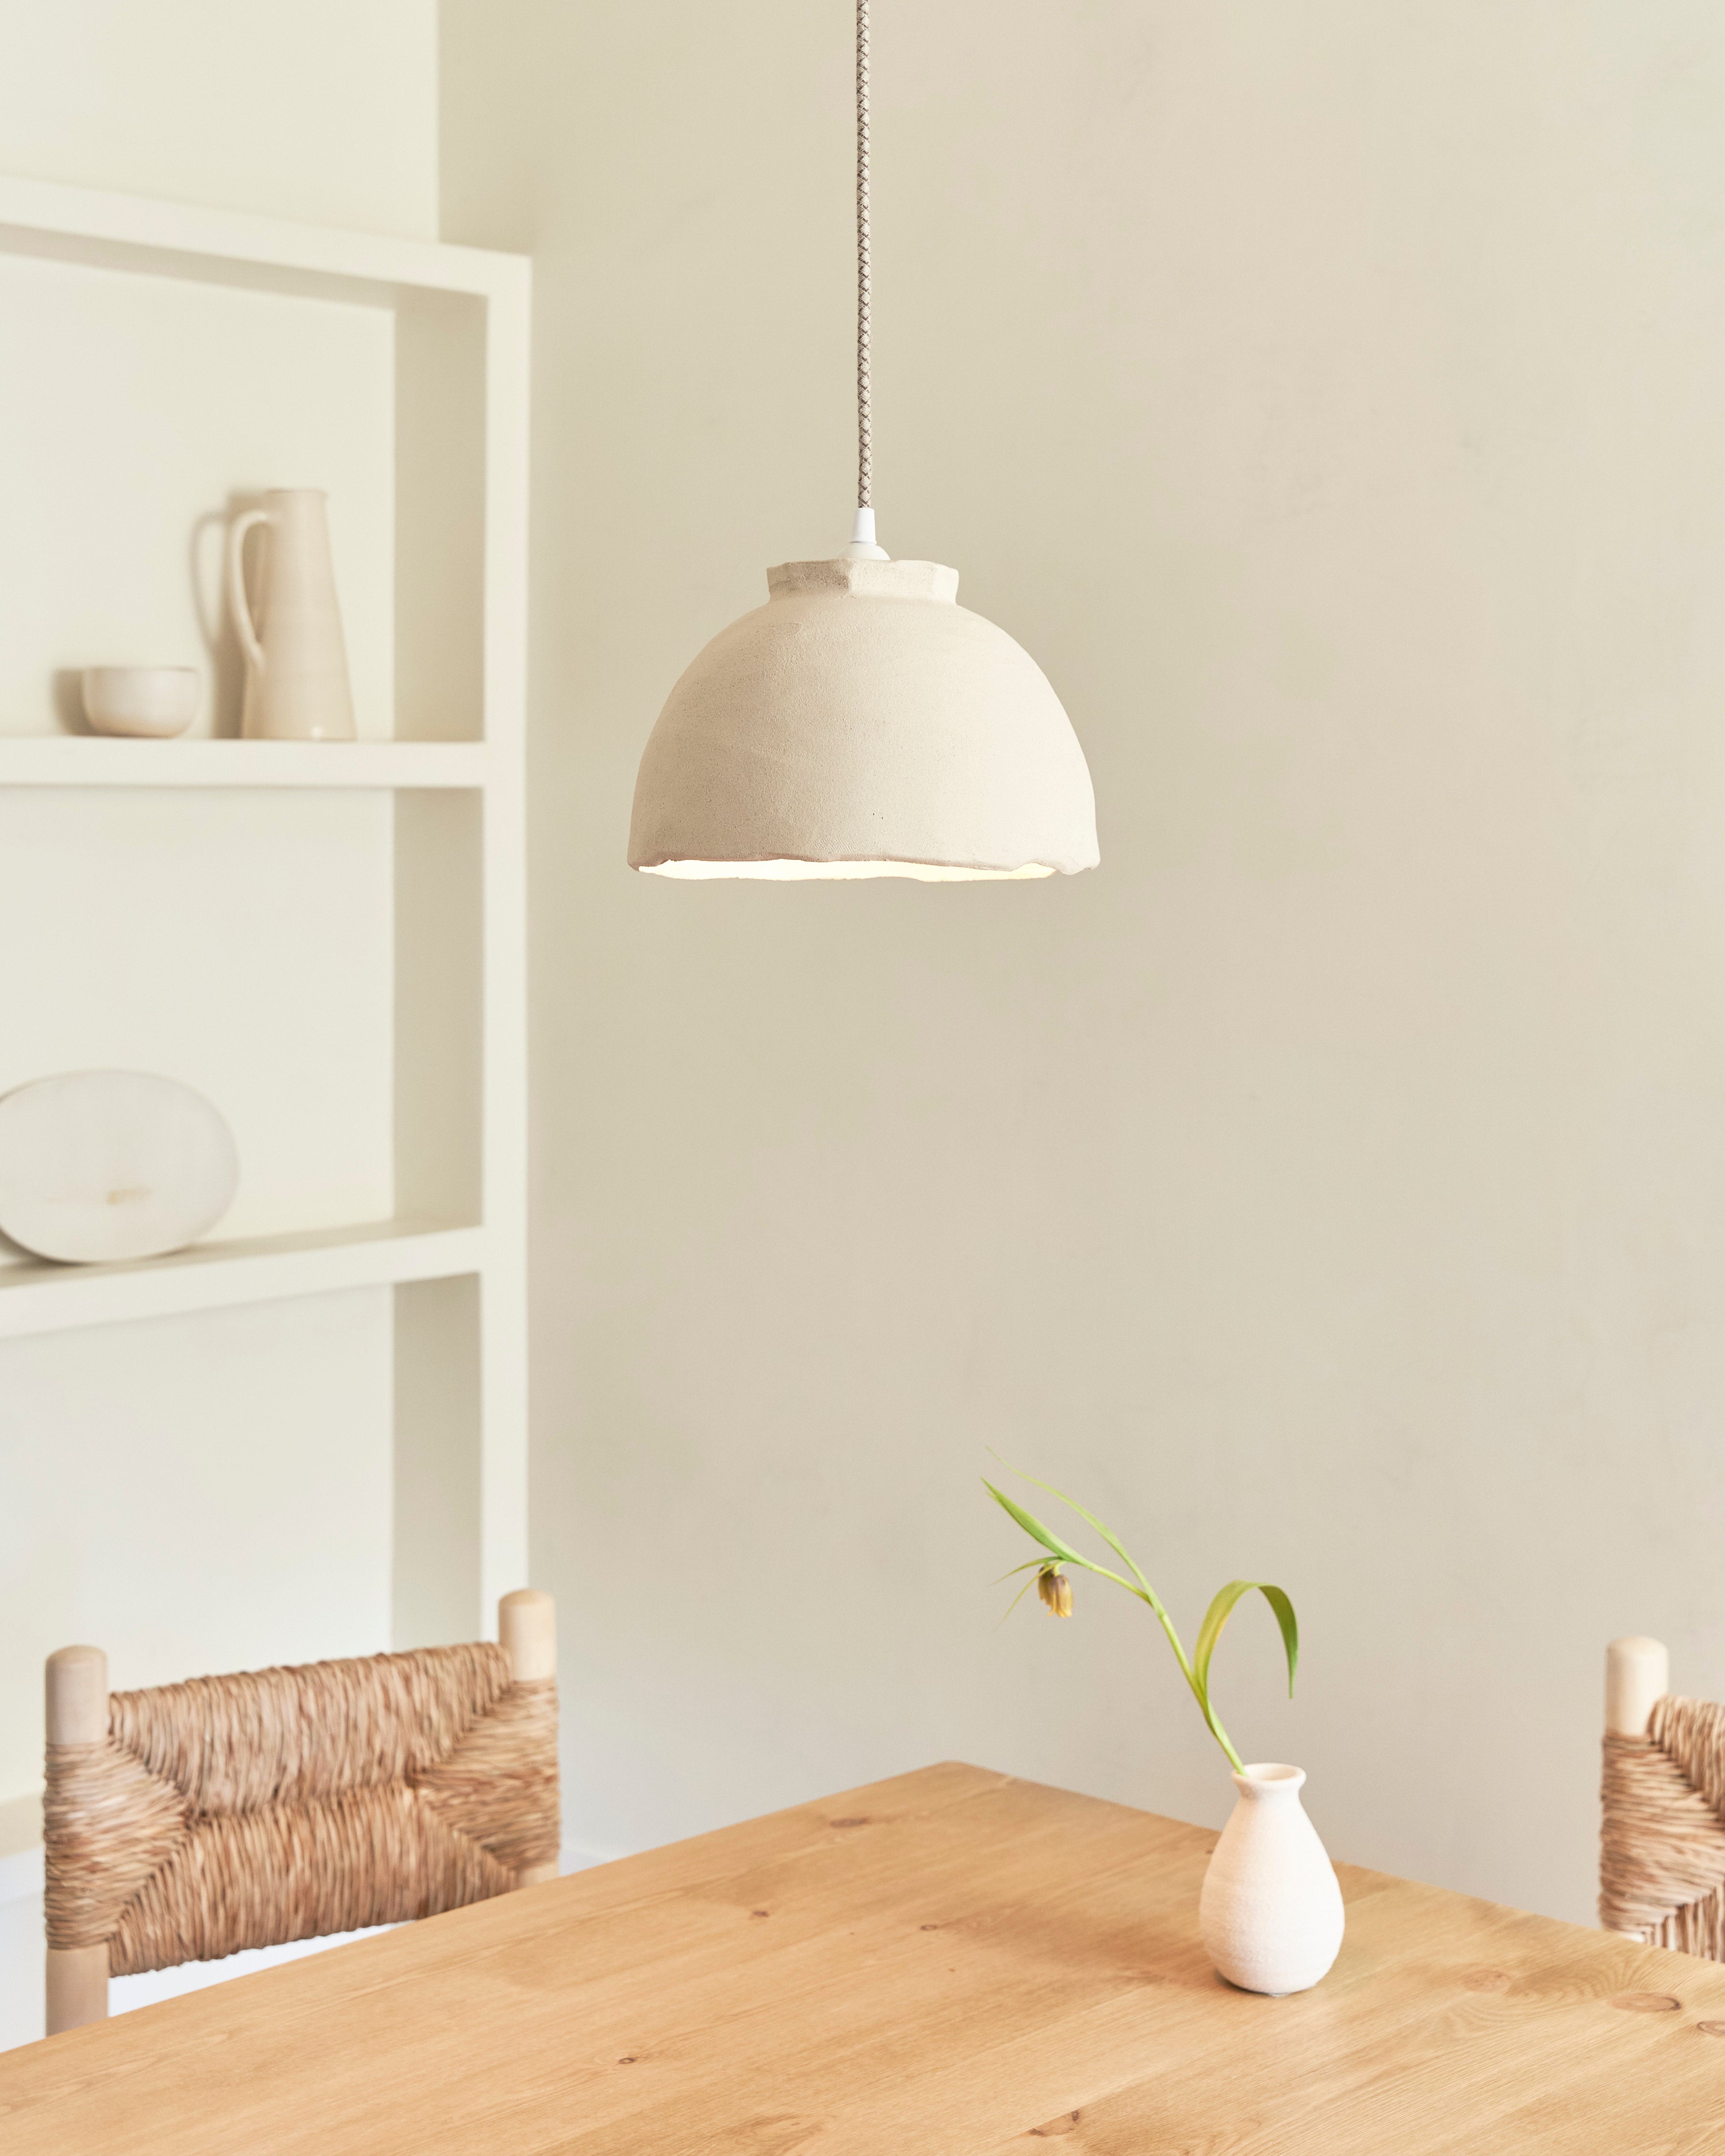 9 lámparas de techo ideales para salón - Blog de Muebles baratos